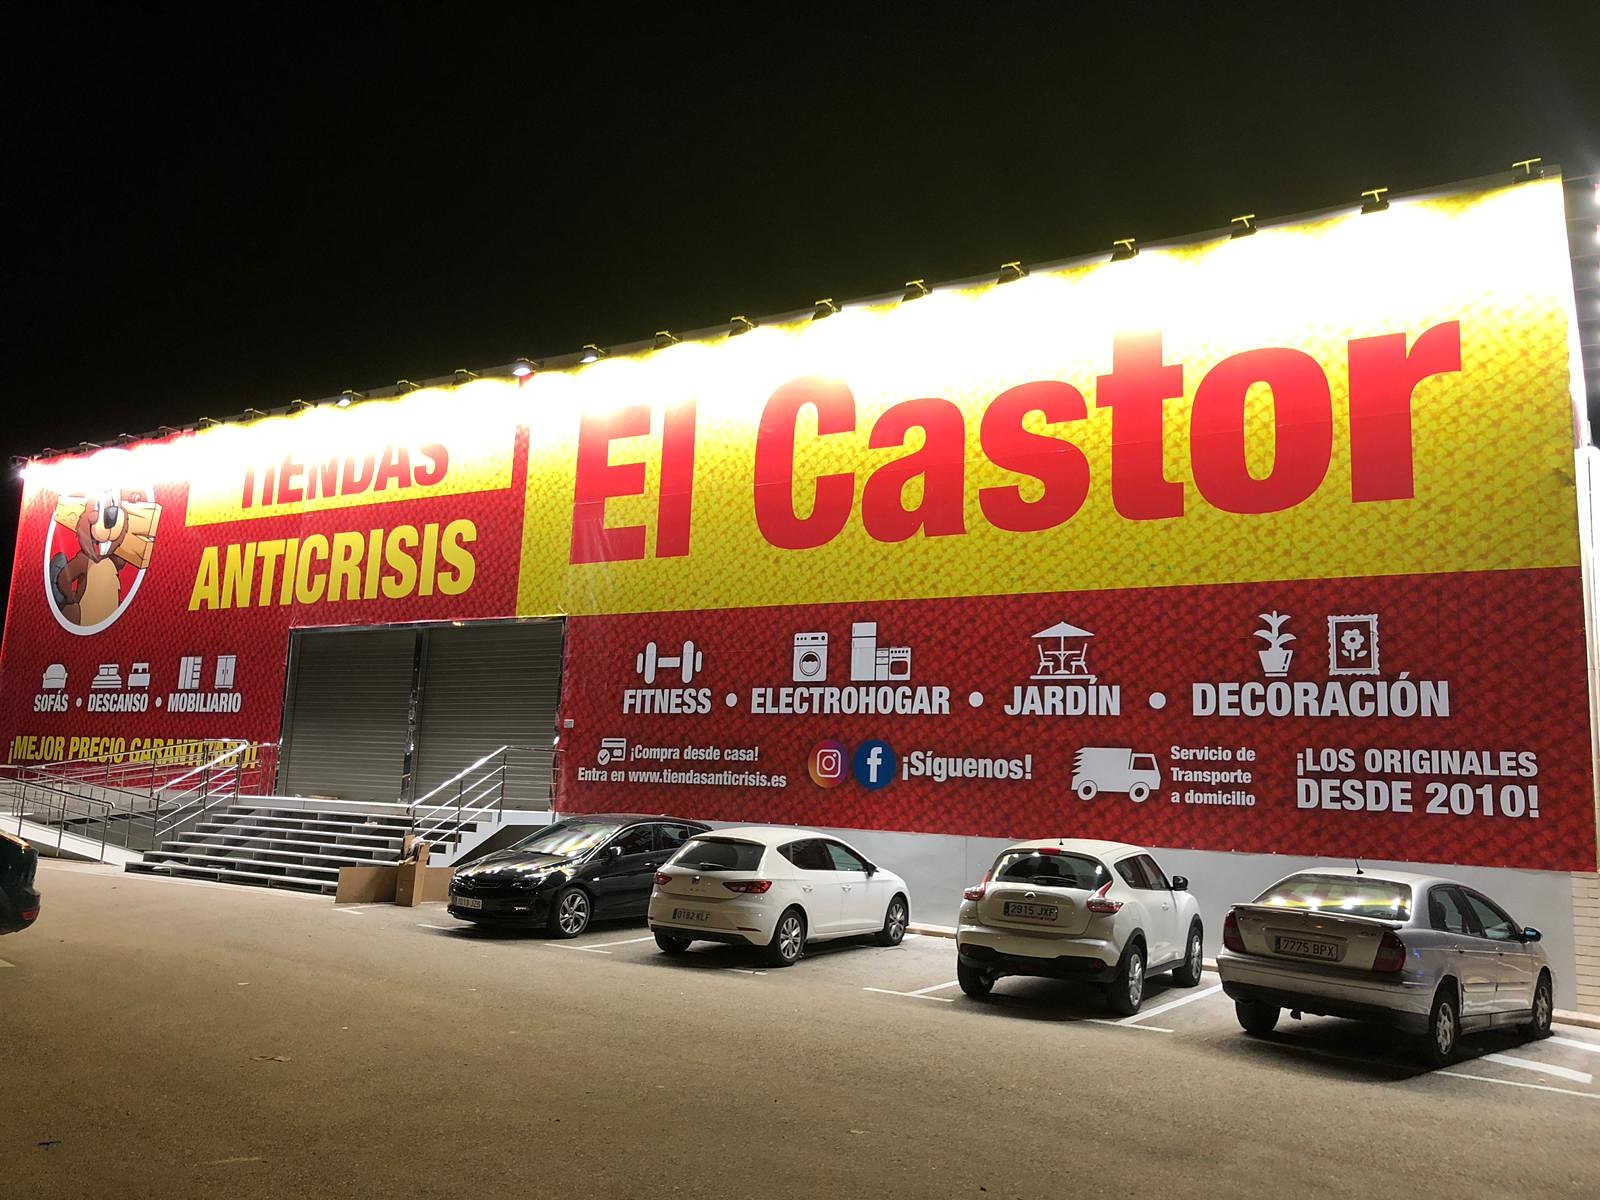 Tiendas Anticrisis El Castor, iluminación exterior